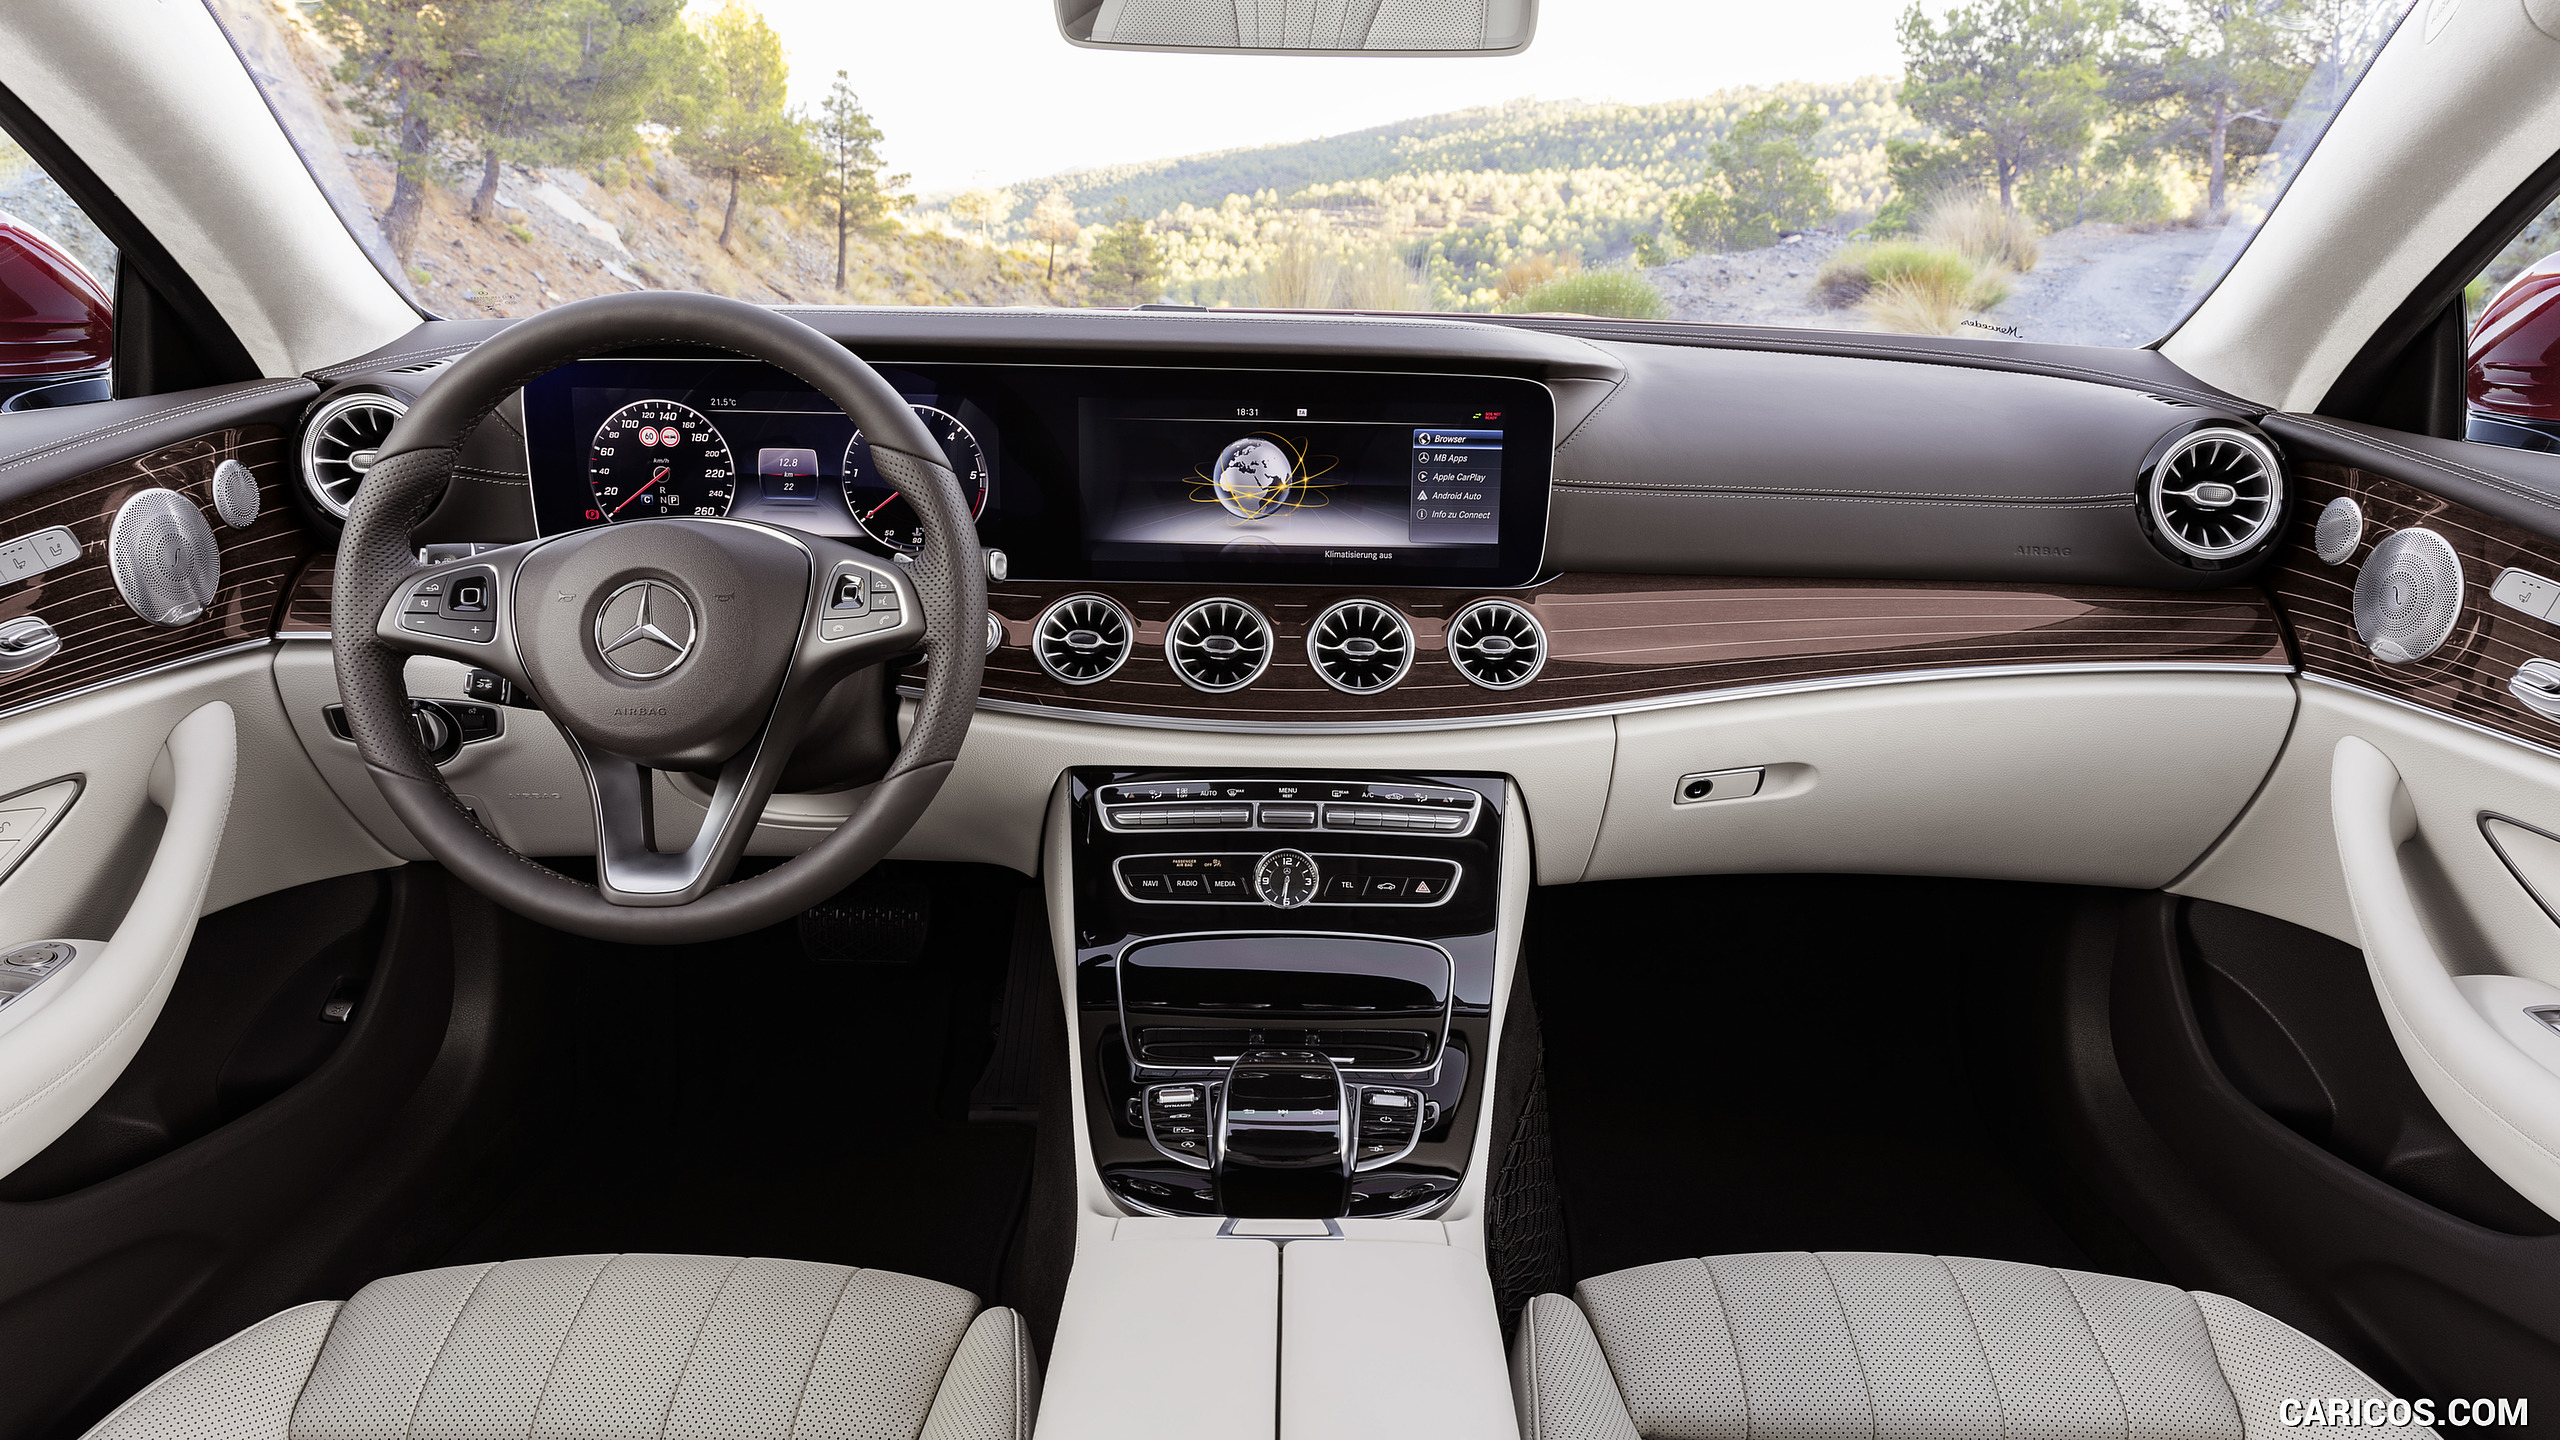 2018 Mercedes-Benz E-Class Coupe - Macchiato Beige / Espresso Brown Leather Interior, Cockpit, #14 of 365